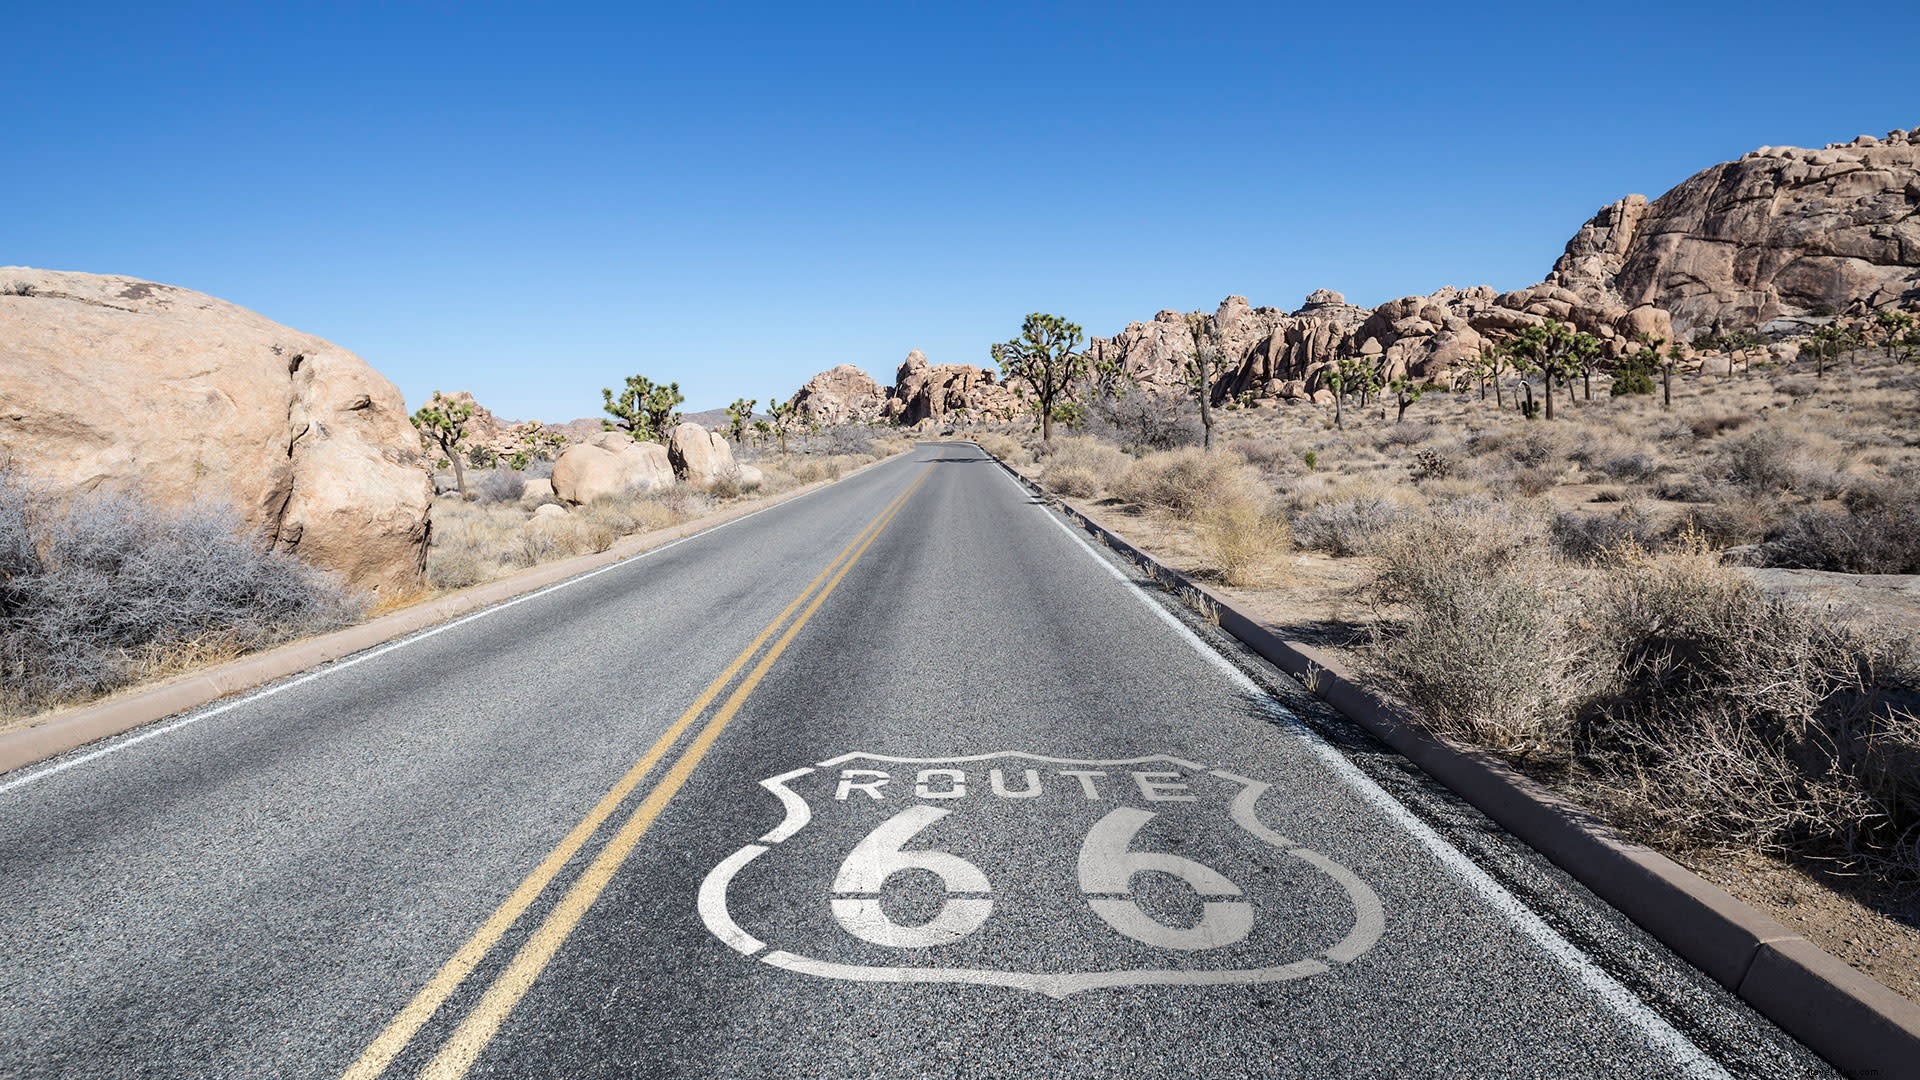 Itinerario nel deserto:fai un viaggio sulla Route 66 